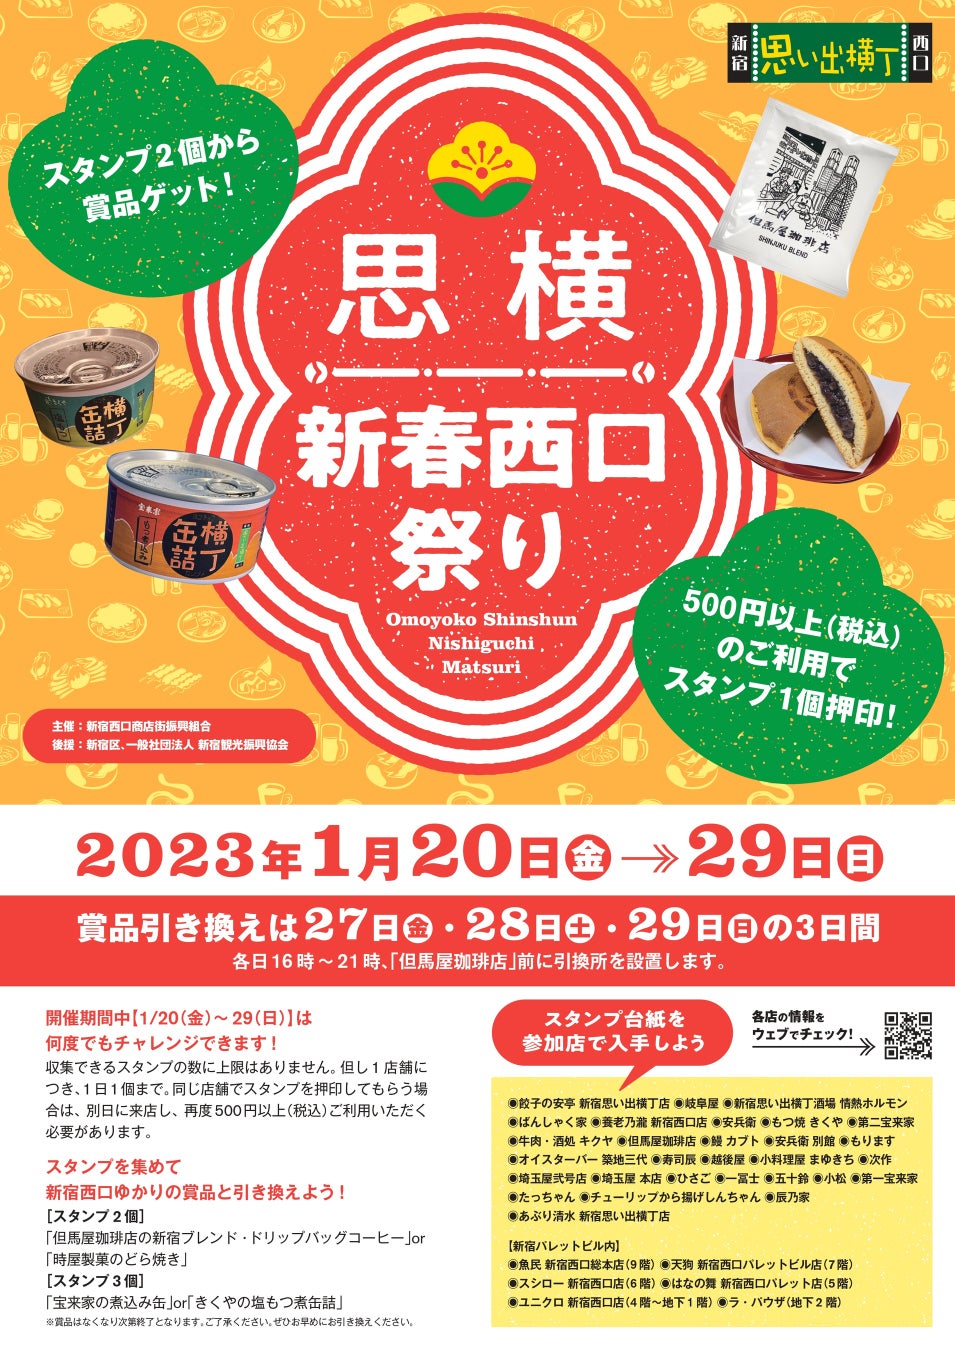 東急百貨店、デリバリーアプリ「menu」と提携し
渋谷の食の利便性を向上
サービス提供開始日を2023年2月2日（木）に決定！